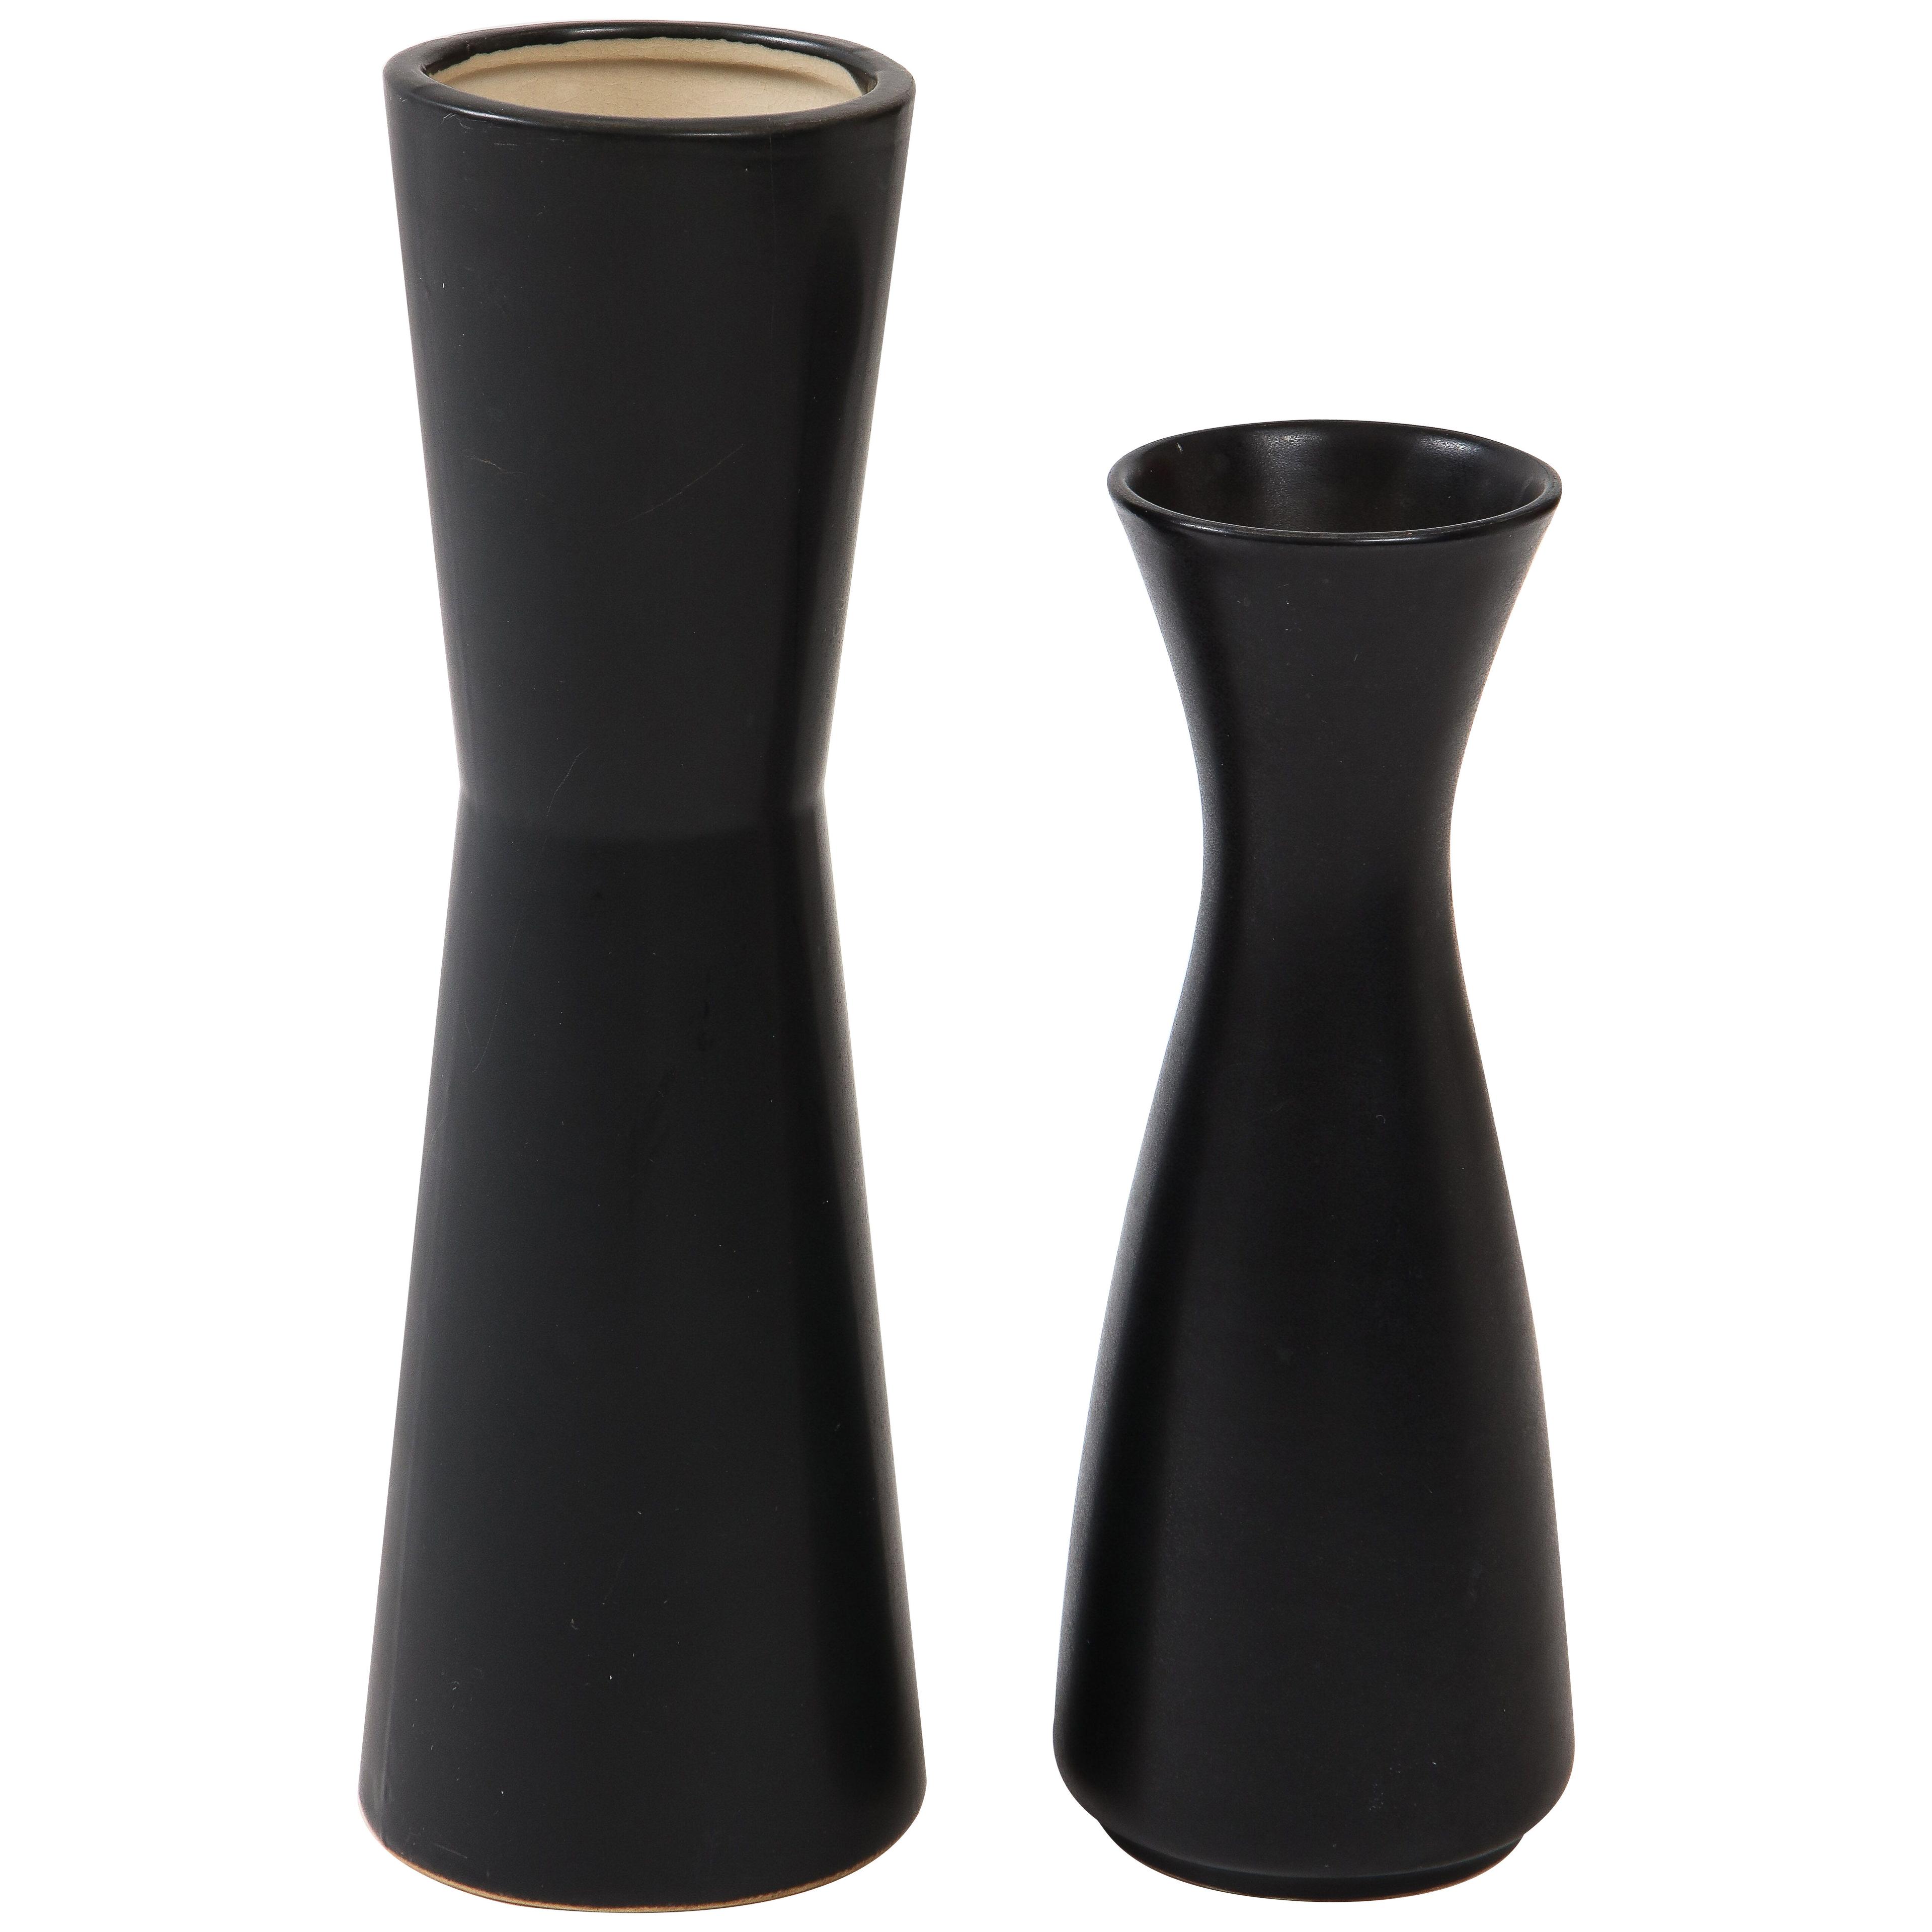 Pair of Modernist Ceramic Matte Black & White Vases, France, 1950's